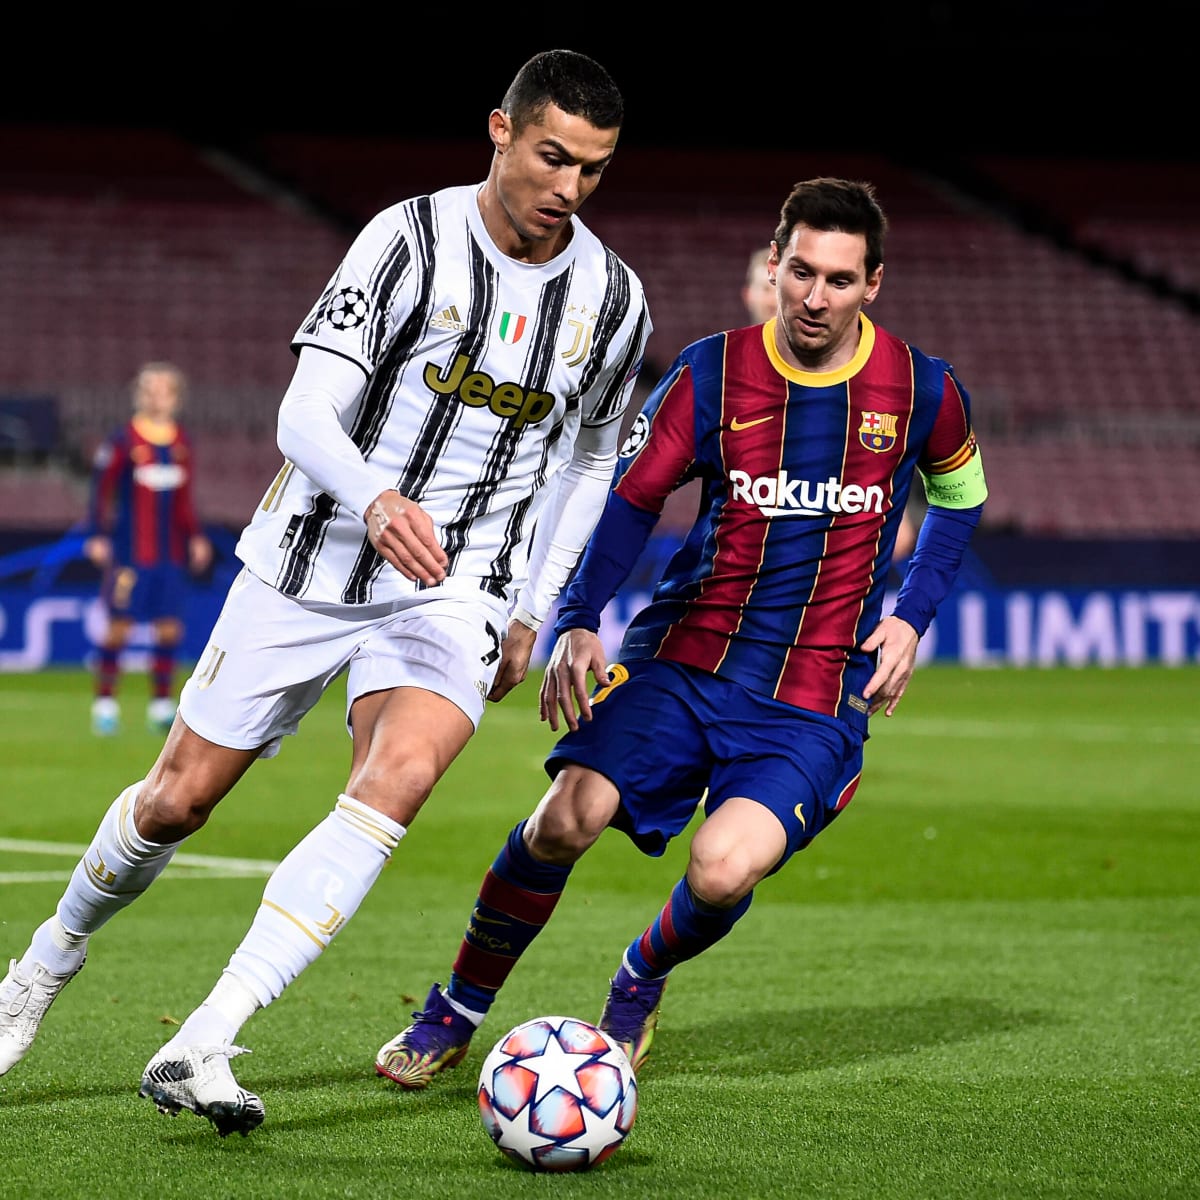 Lionel Messi and Cristiano Ronaldo both score in thrilling